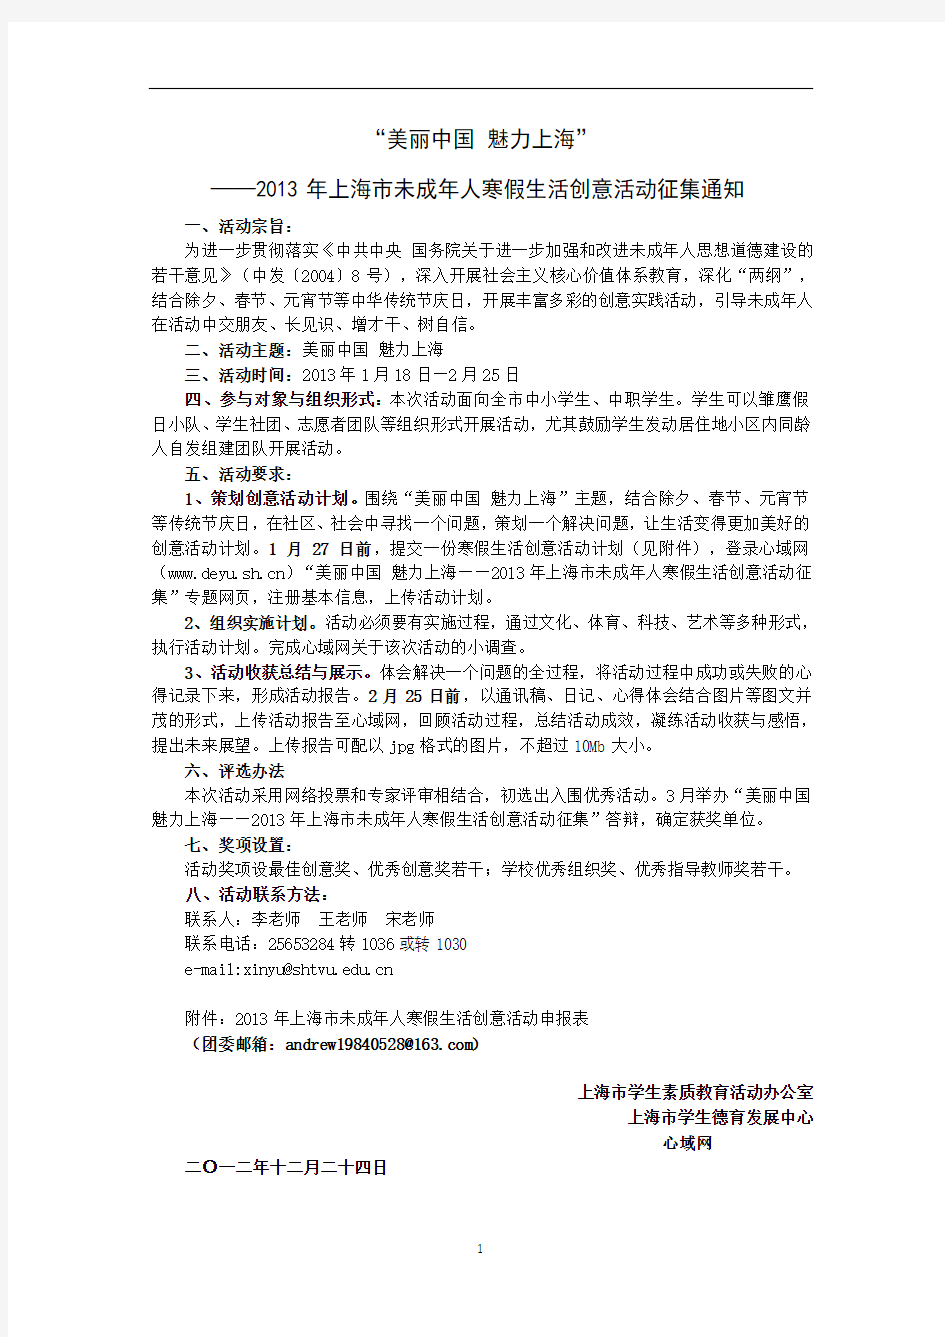 “美丽中国 魅力上海”——2013年上海市未成年人寒假创意生活征集活动通知31219